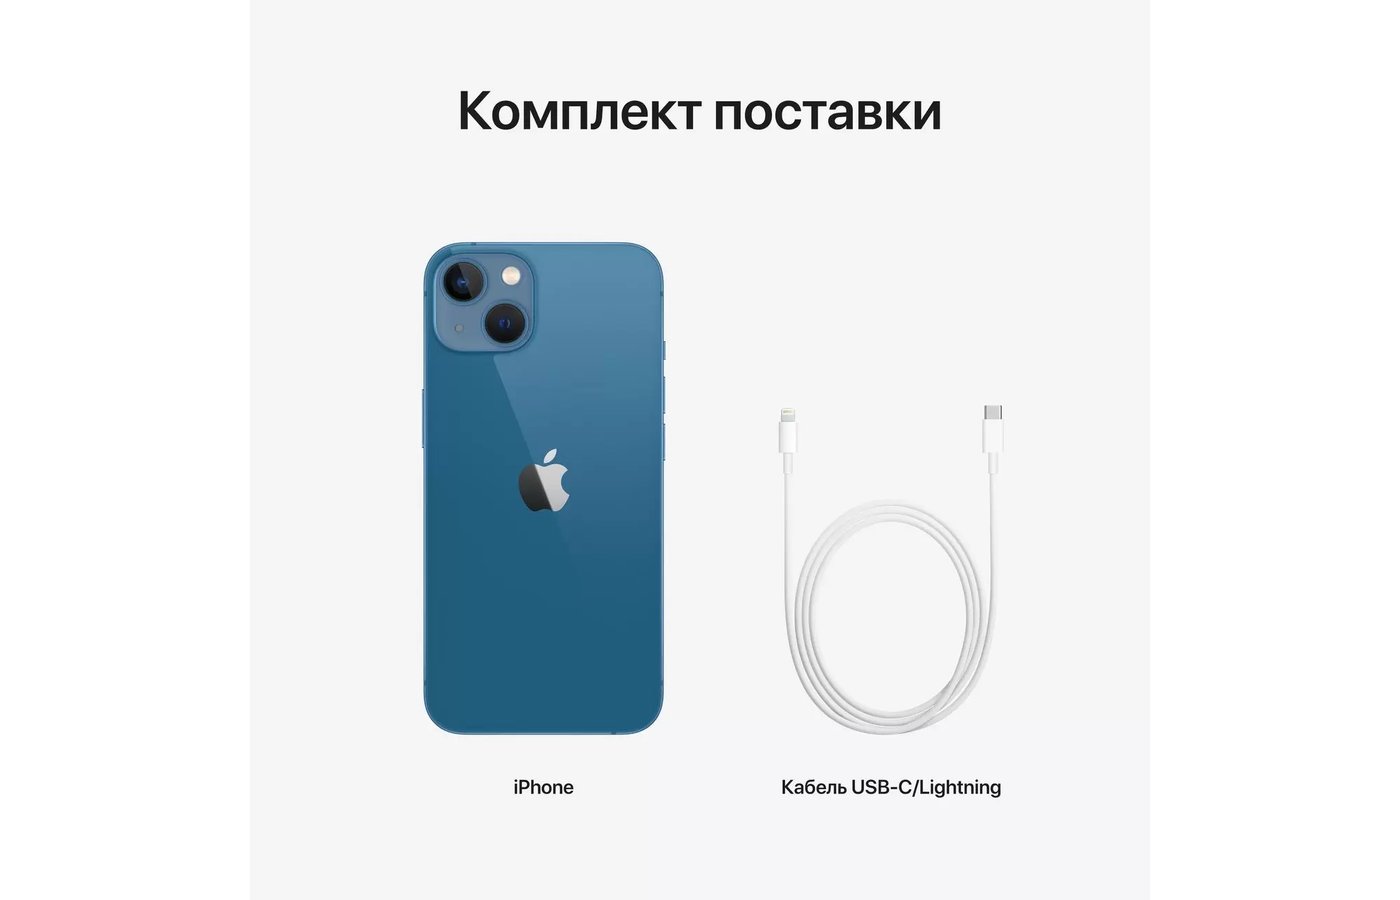 Смартфон Apple Iphone 13 128Gb Blue (ПИ) - купить в интернет-магазине  RBT.ru. Цены, отзывы, характеристики и доставка в Челябинске